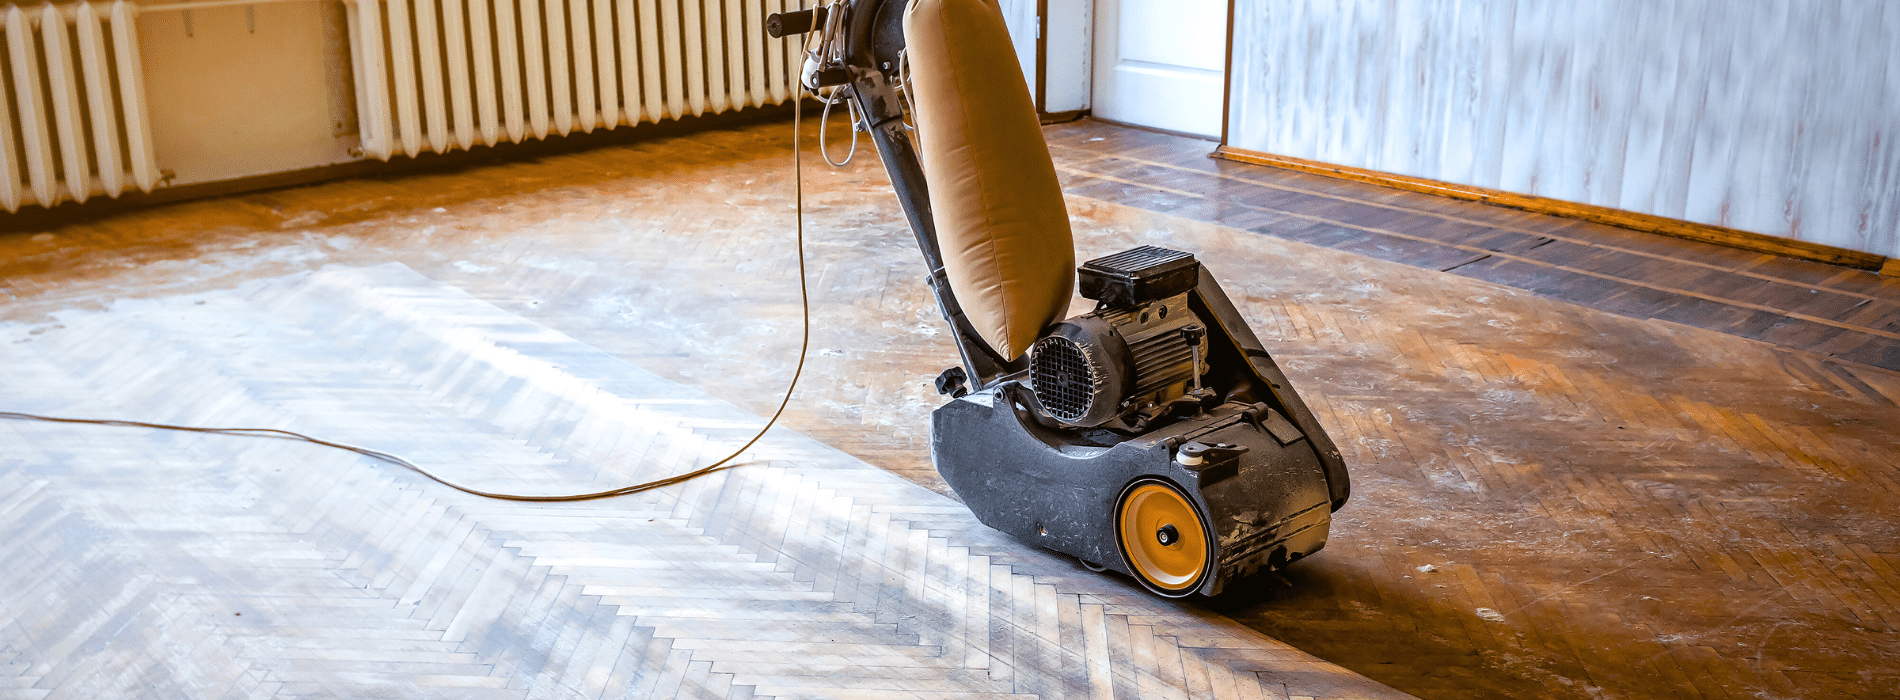 Successful Wood Floor Sanding – Floor Sanding Experts Guide